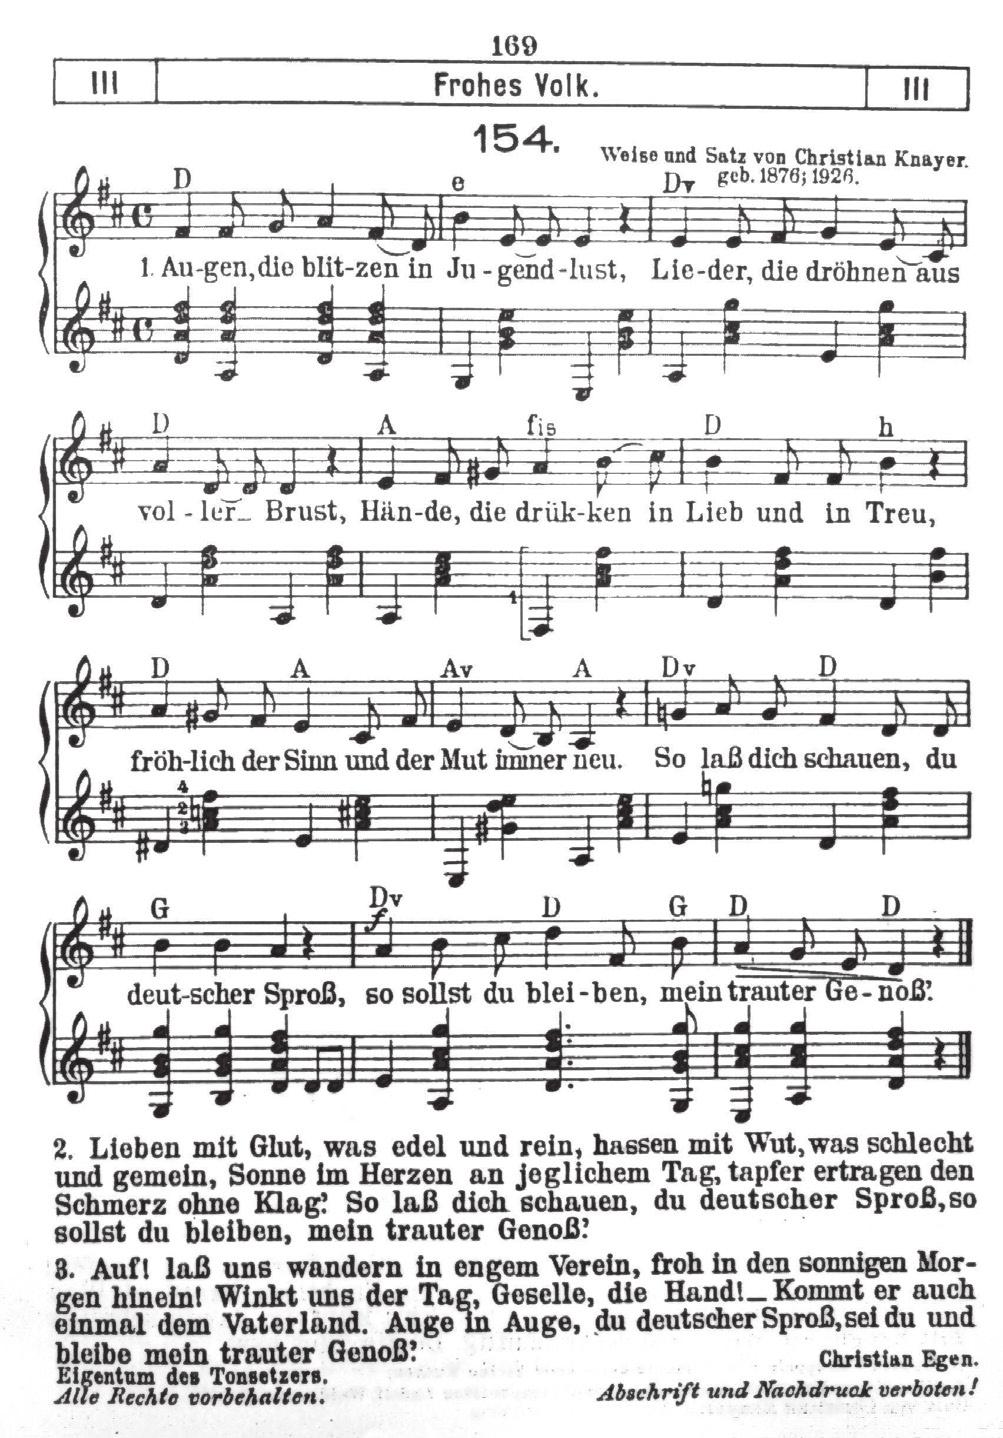 Illustration 2: Sång i Deutsches Lautenlied 1928 pedagogiska koncept tillskrev musiken en central plats i skolvardagen och undervisningsfilosofin.